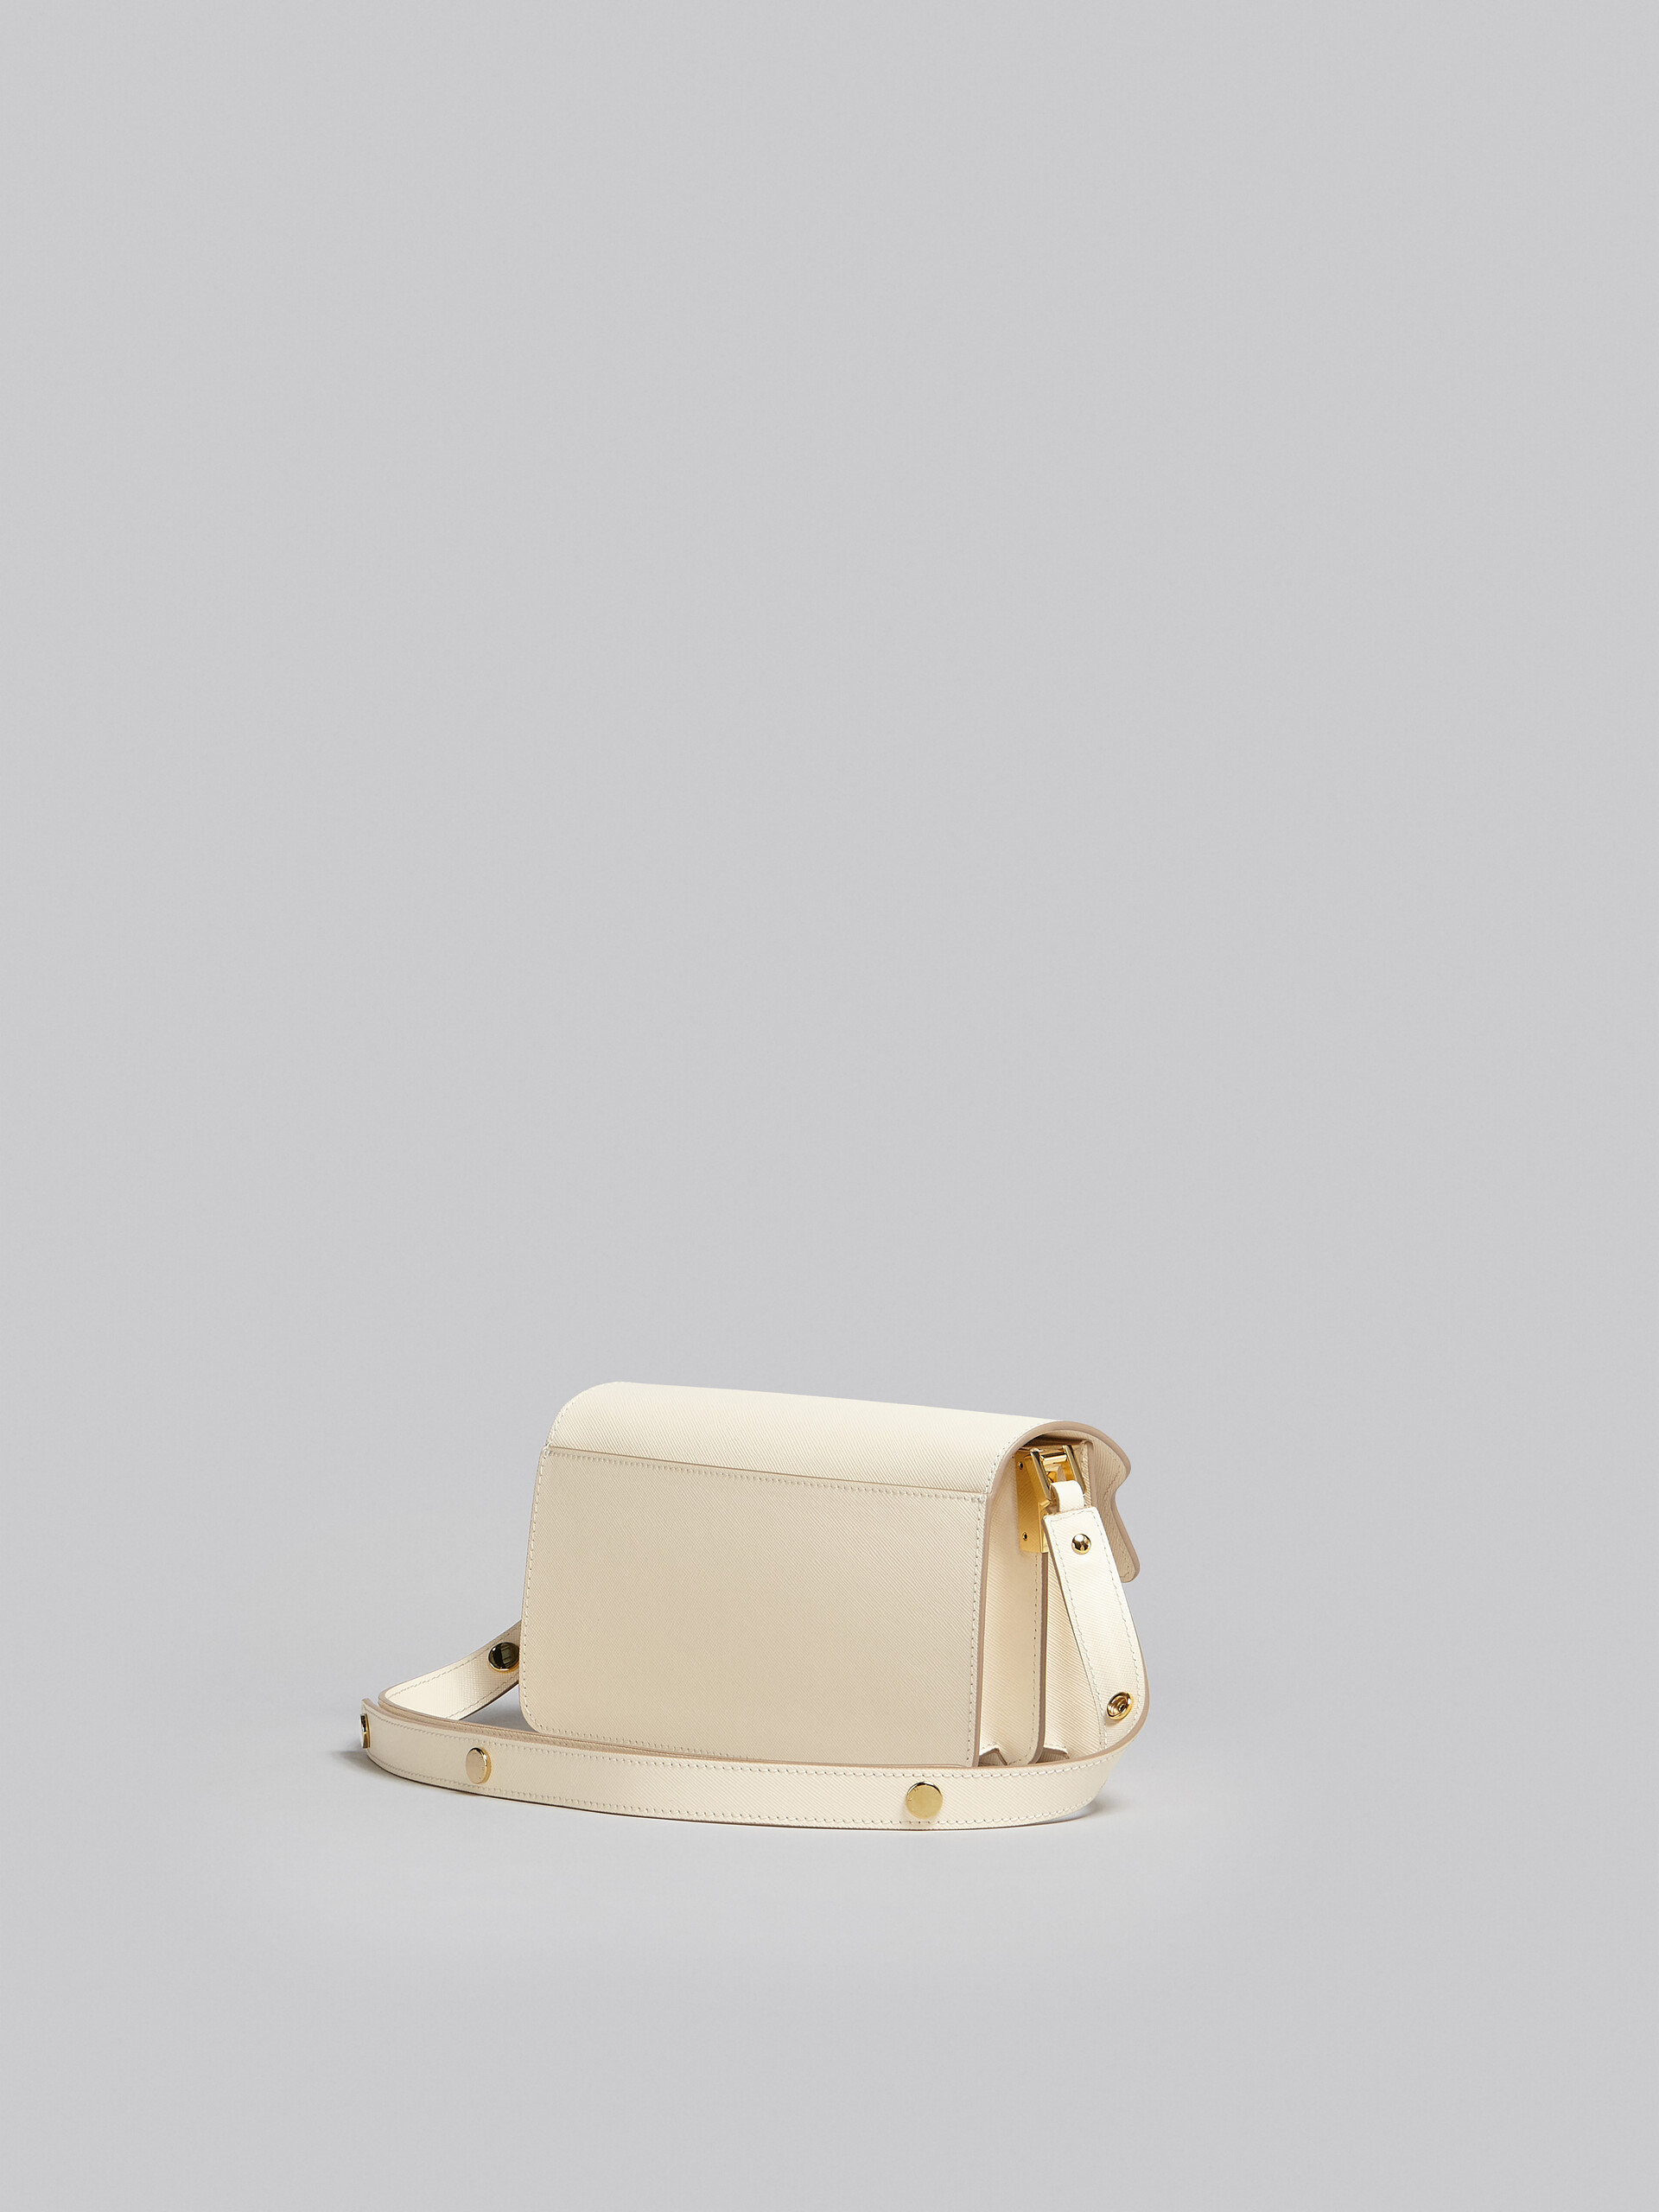 Trunk Bag E/W in white saffiano leather